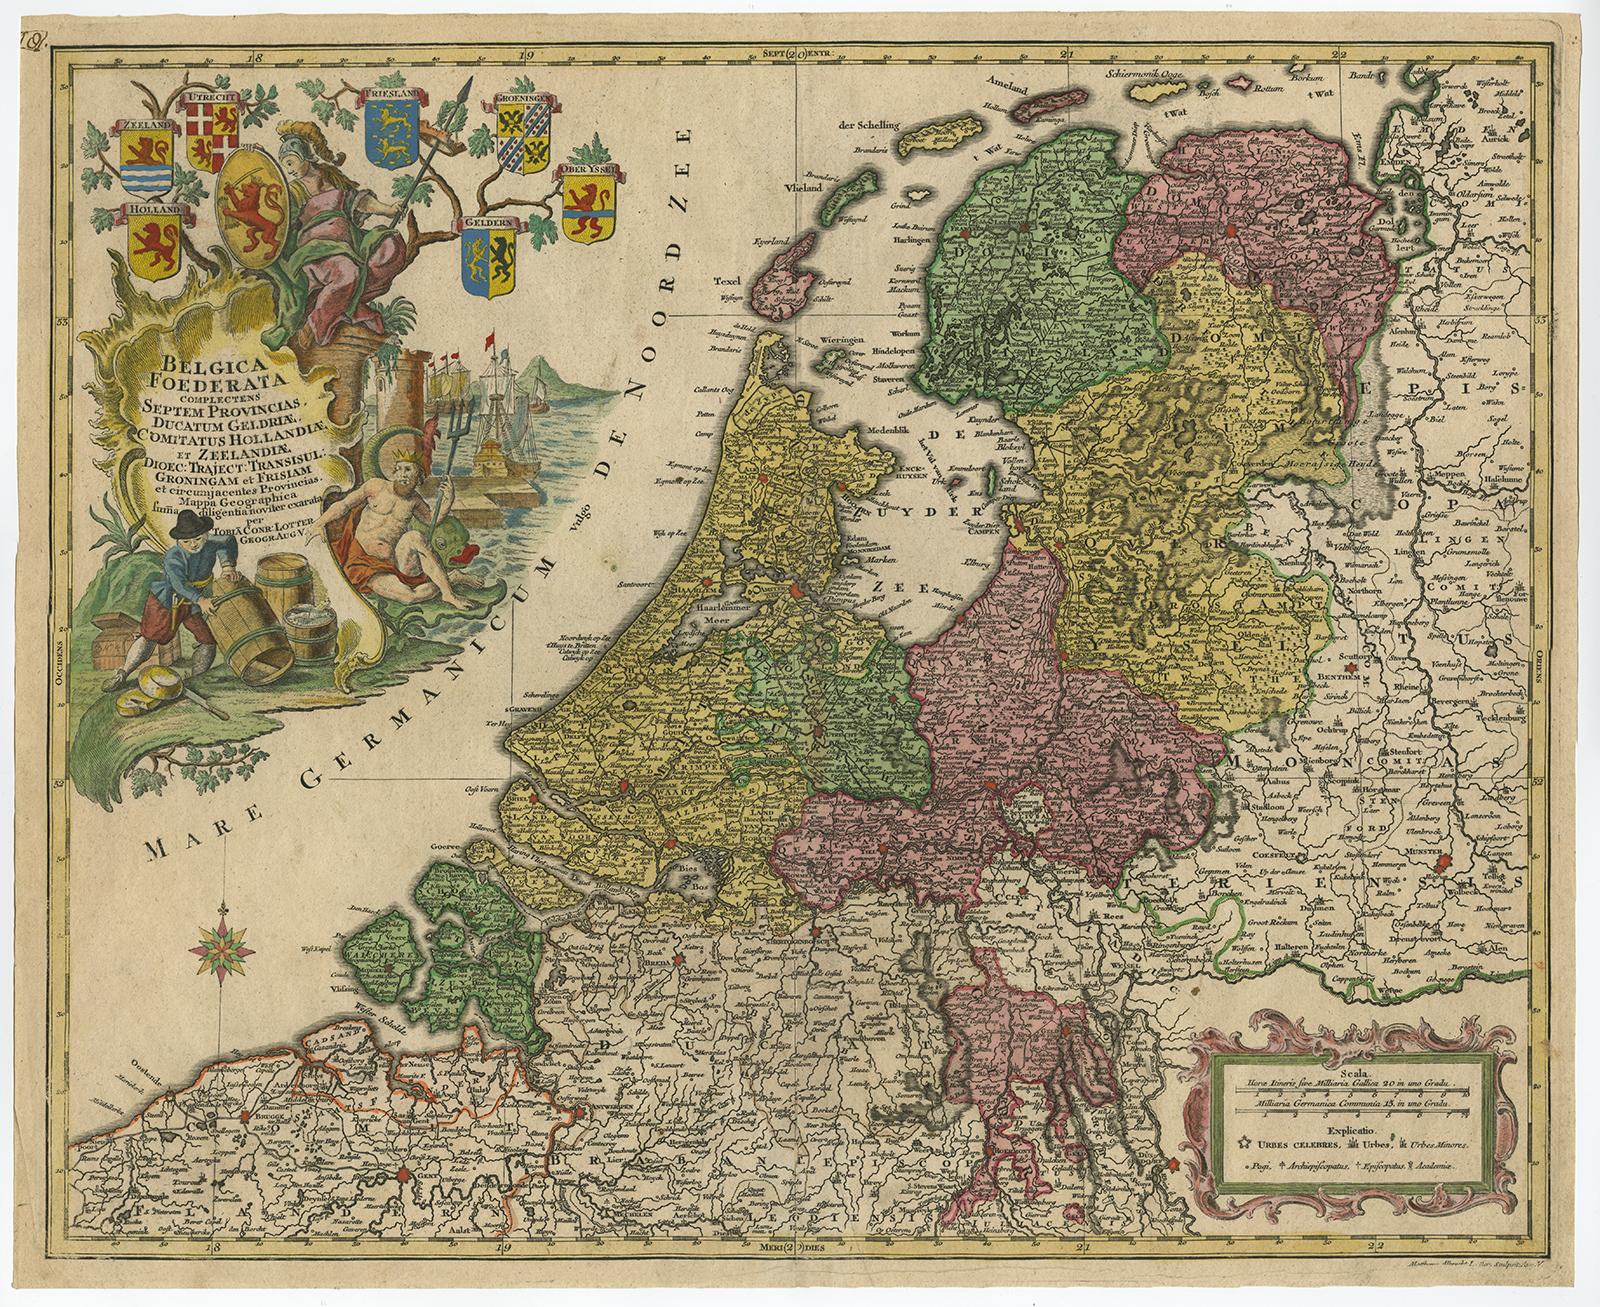 Original antique map titled 'Belgica Foederata complectens septem Provincias Ducatum Geldriae (..)